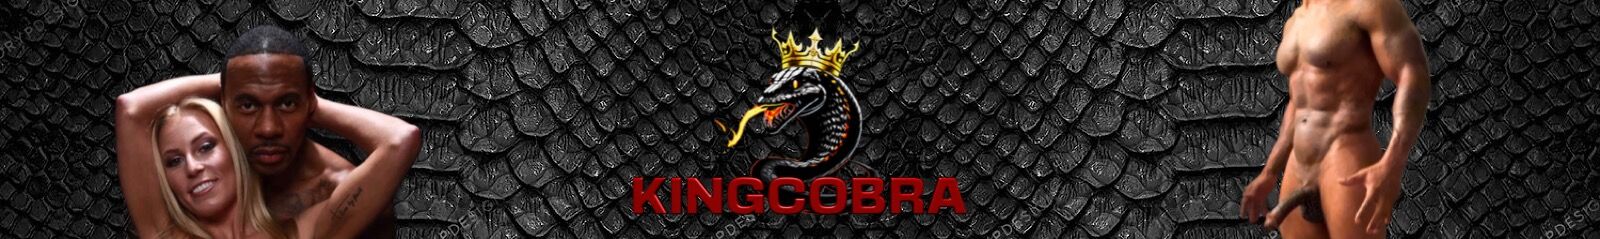 Real King Cobra